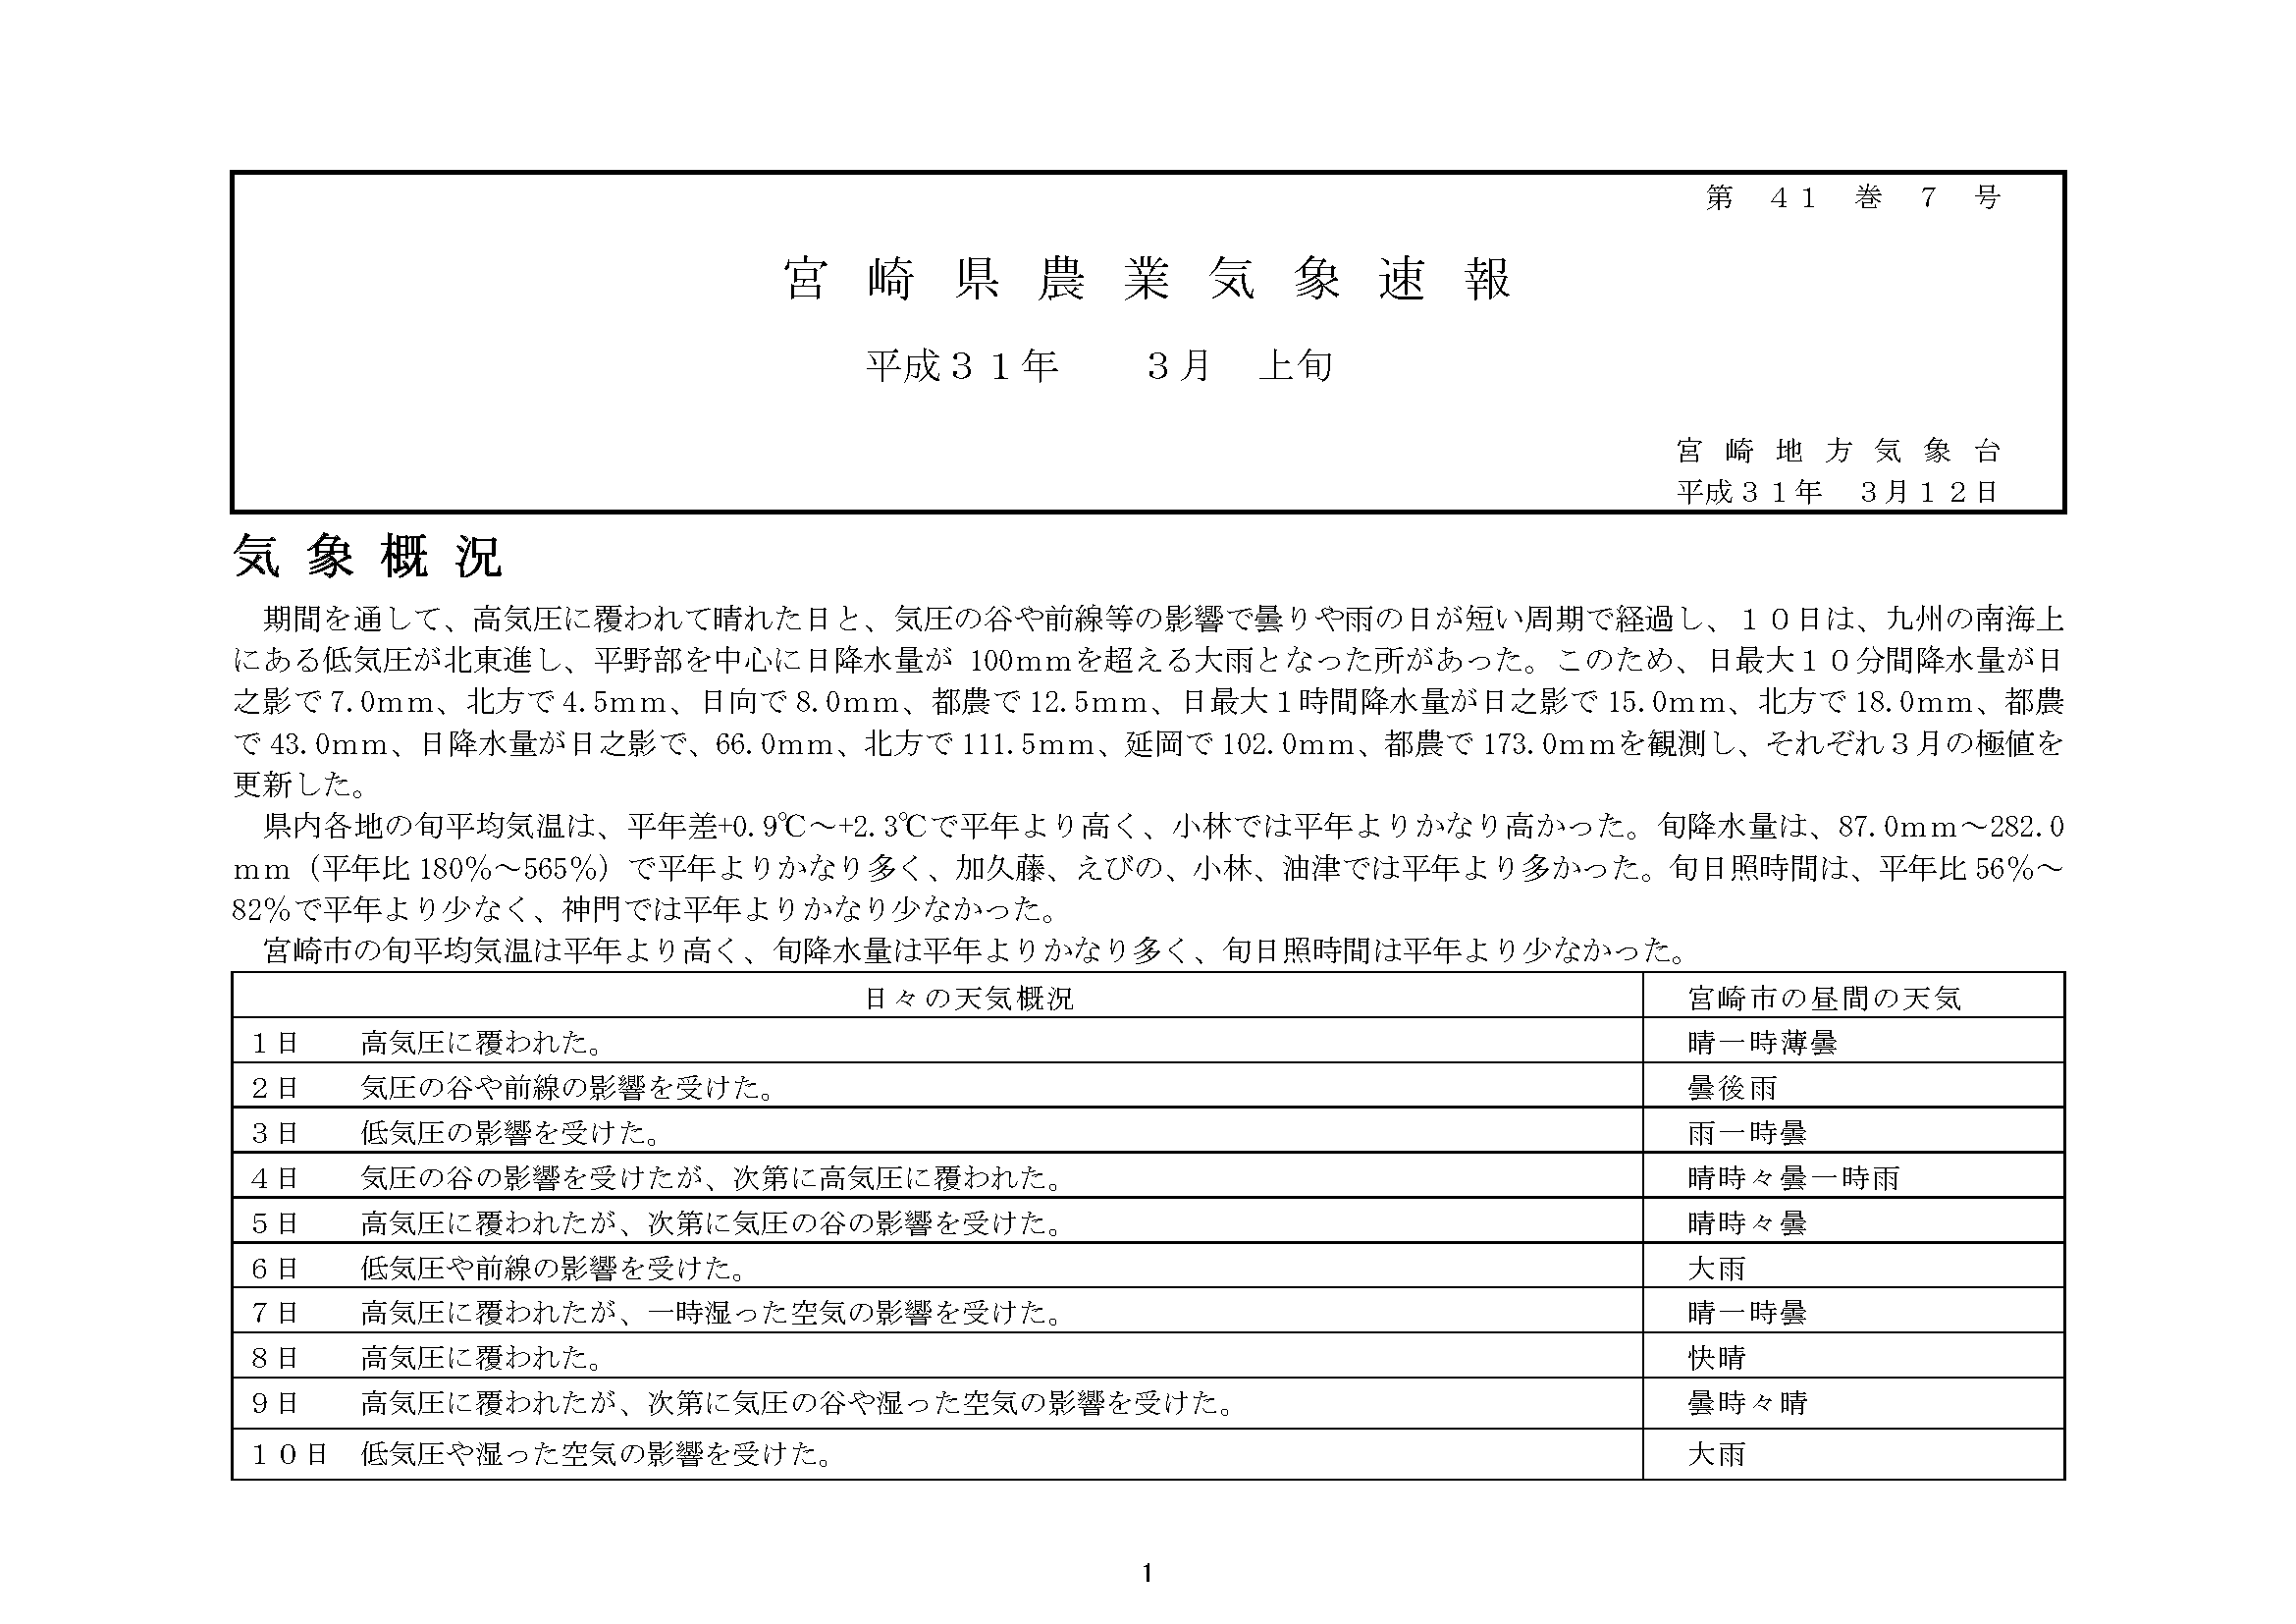 宮崎県農業気象速報平成31年3月上旬PDF